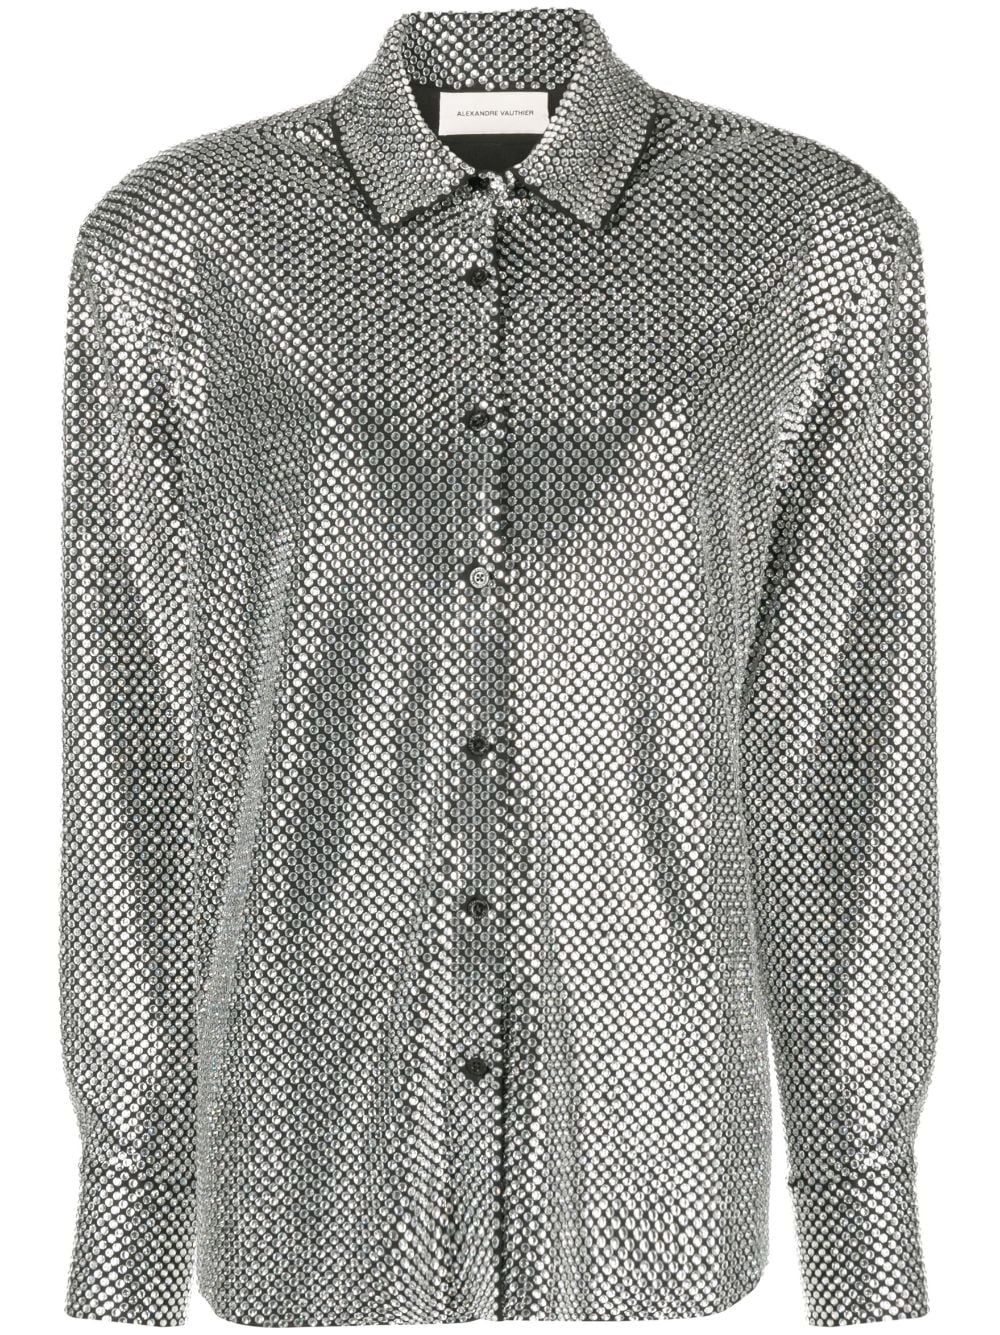 rhinestone-embellished shirt - 1